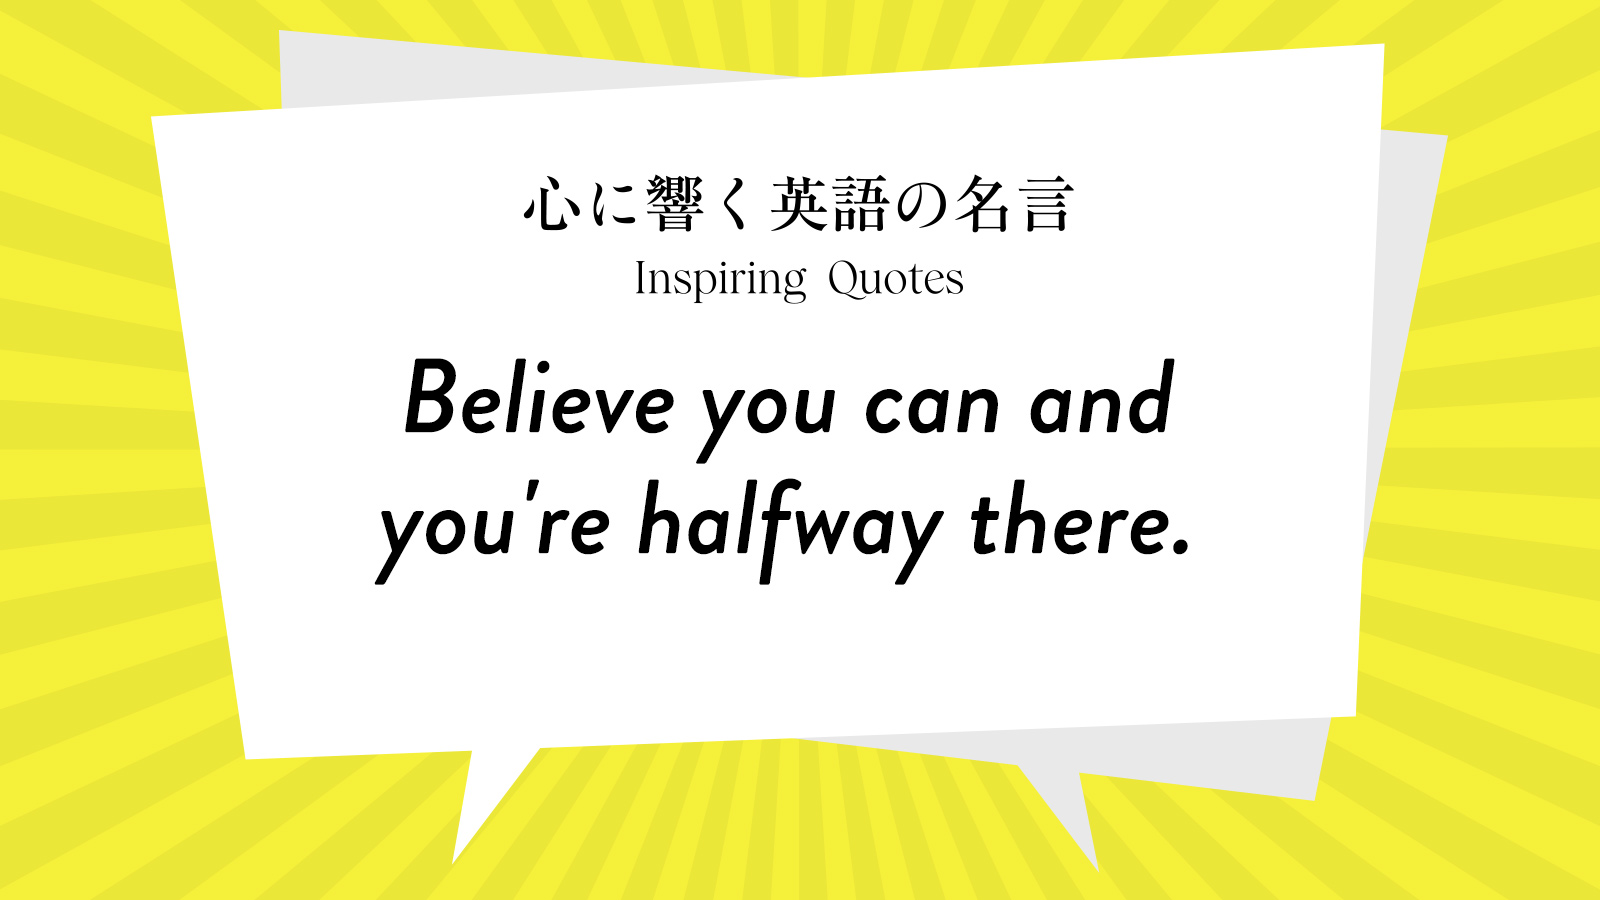 今週の名言 “Believe you can and you’re halfway there.” | Inspiring Quotes: 心に響く英語の名言